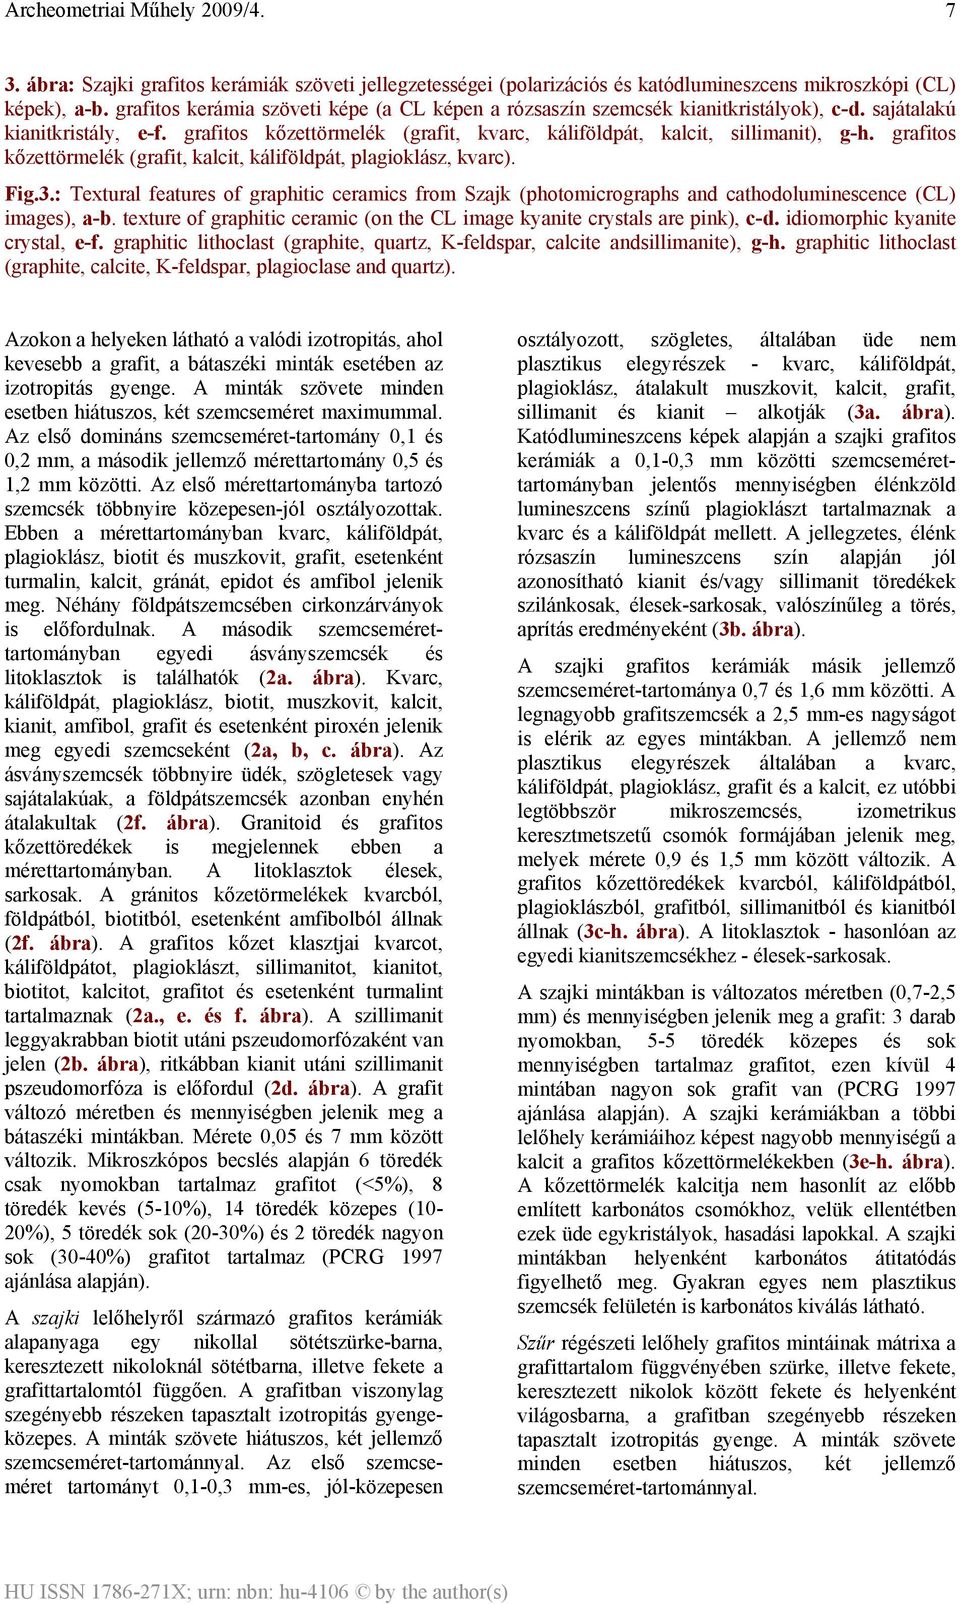 grafitos kőzettörmelék (grafit, kalcit, káliföldpát, plagioklász, kvarc). Fig.3.: Textural features of graphitic ceramics from Szajk (photomicrographs and cathodoluminescence (CL) images), a-b.